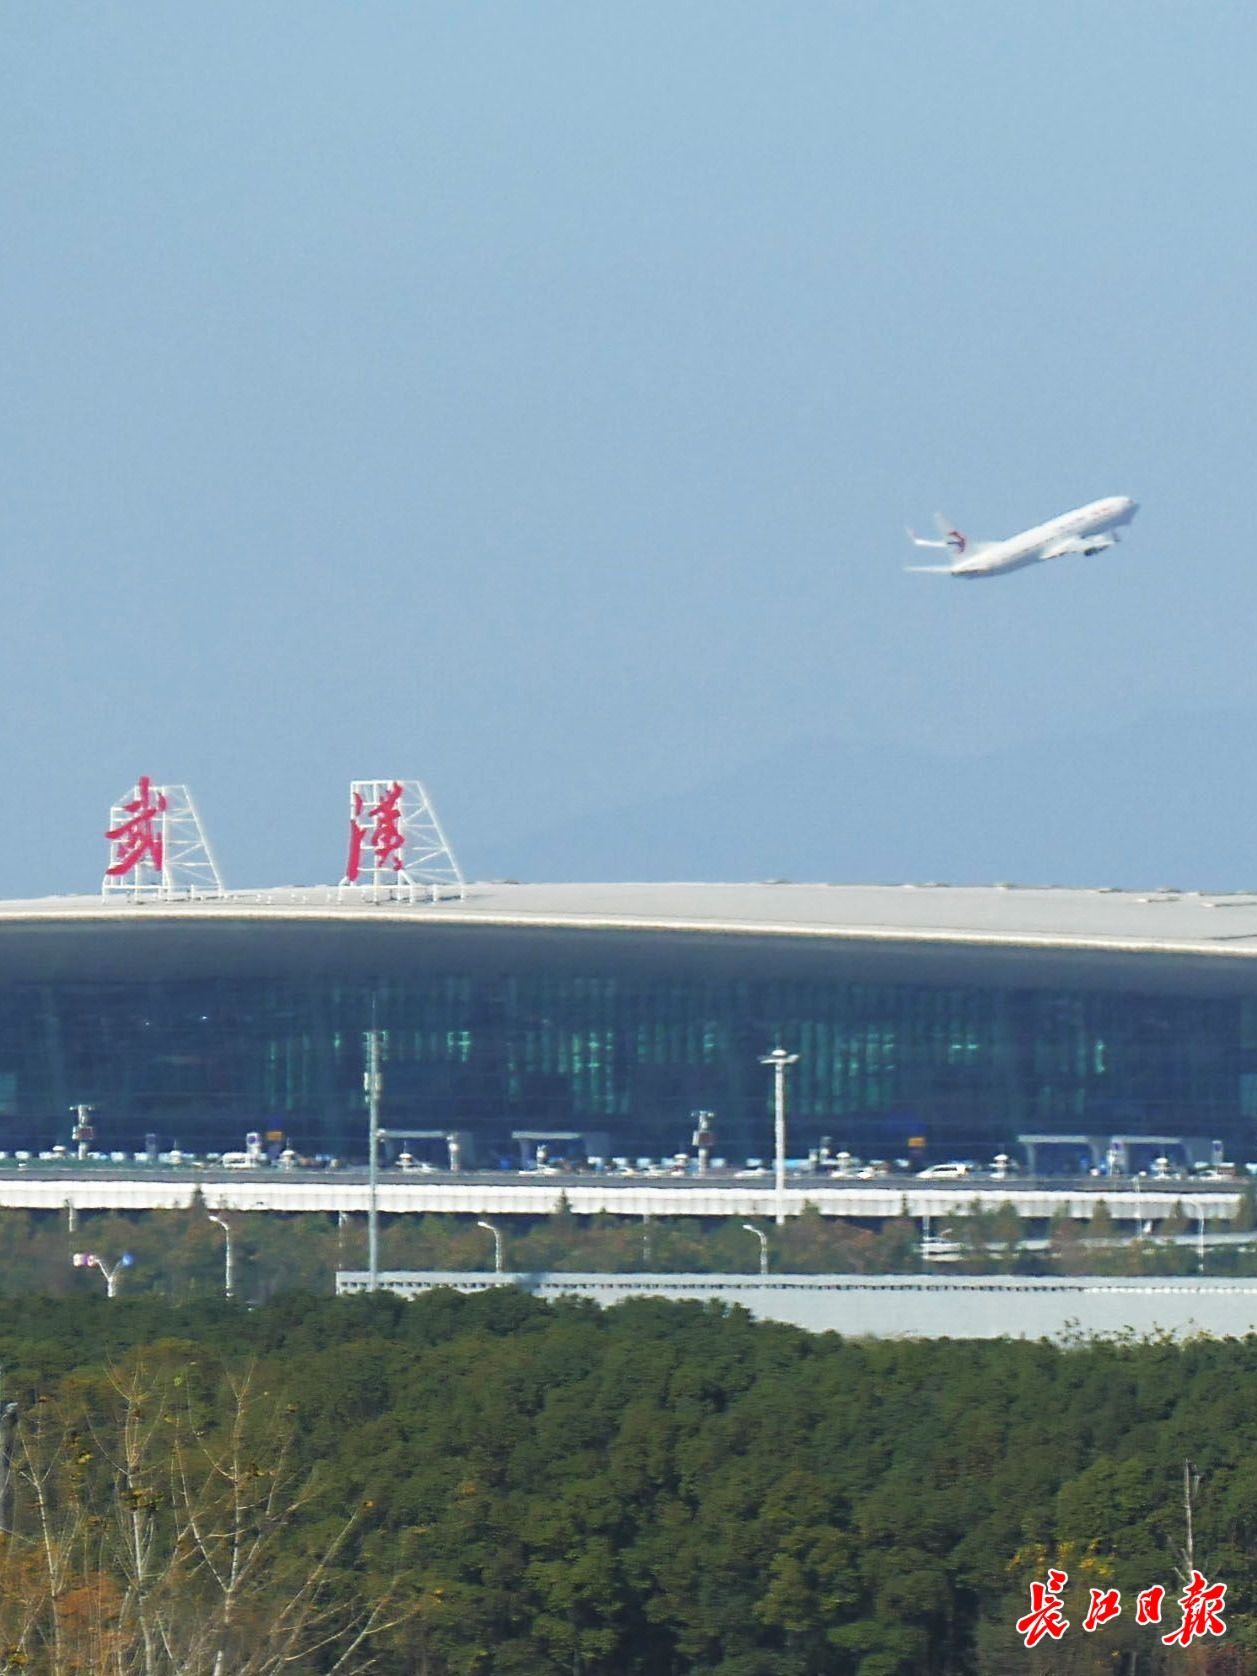 武汉天河国际机场,航班飞往各地长江日报记者詹松 摄